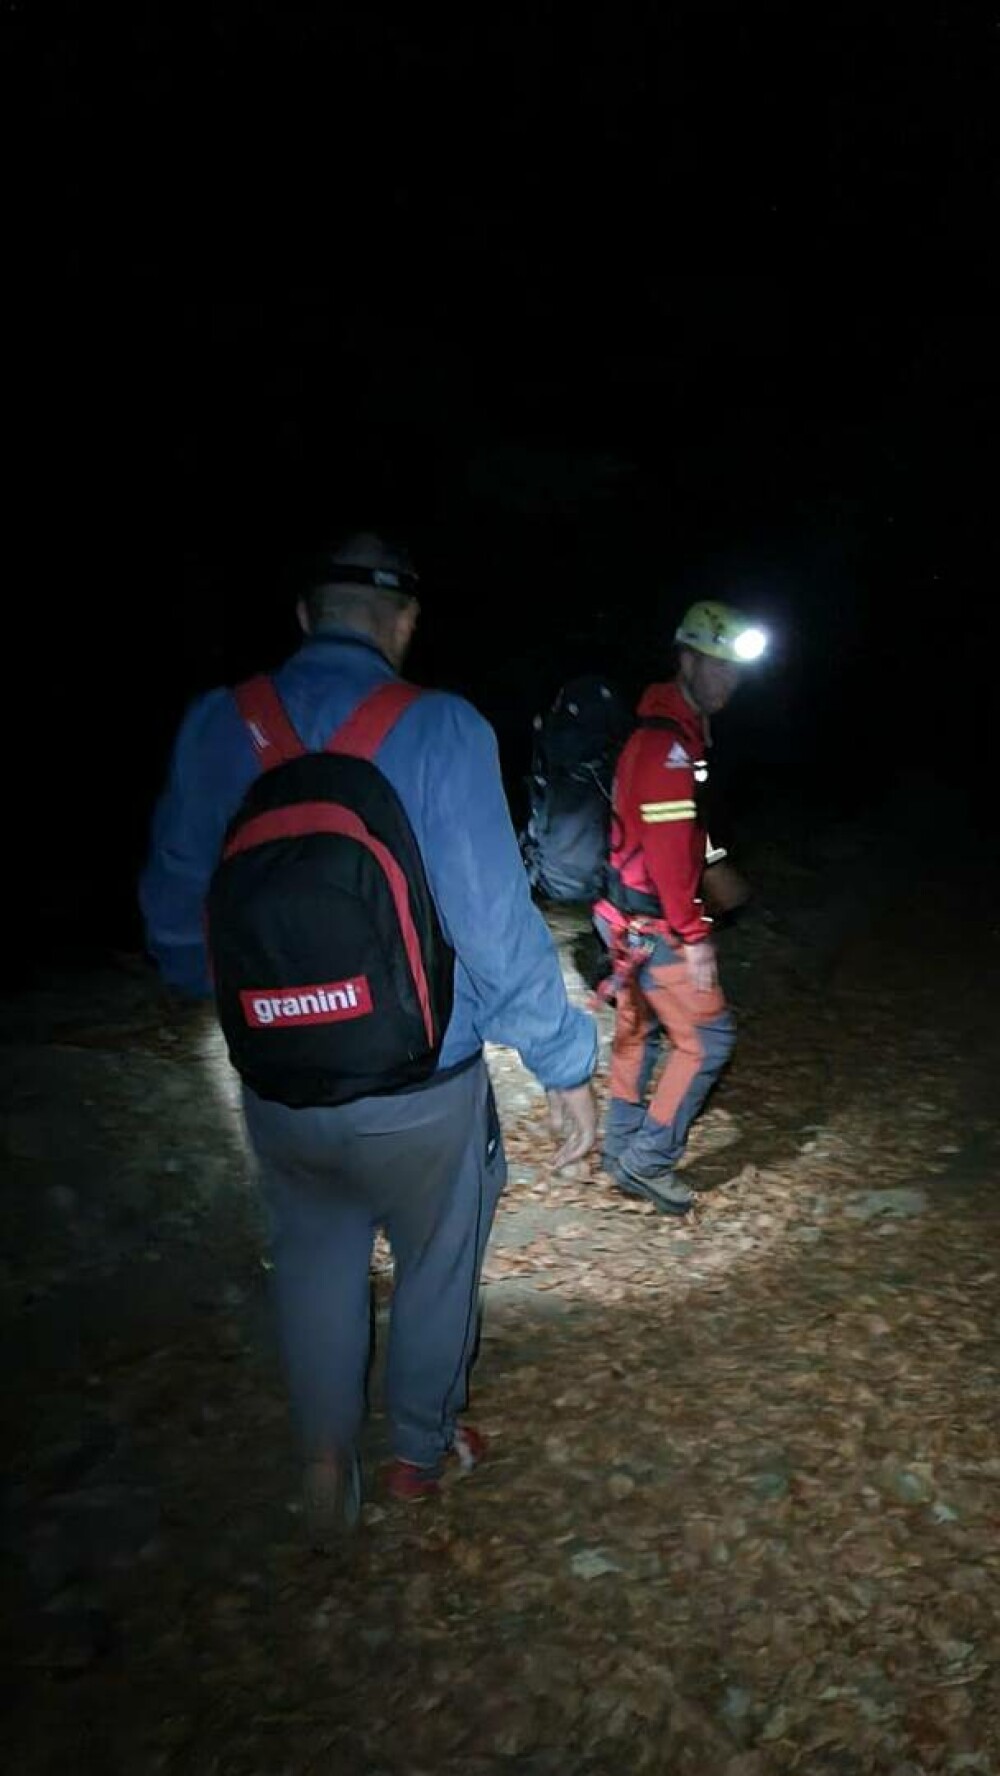 Un bărbat încălțat în teniși a căzut pe o pantă periculoasă din Jepii Mici. Urcase pe munte cu soția și copilul - Imaginea 1